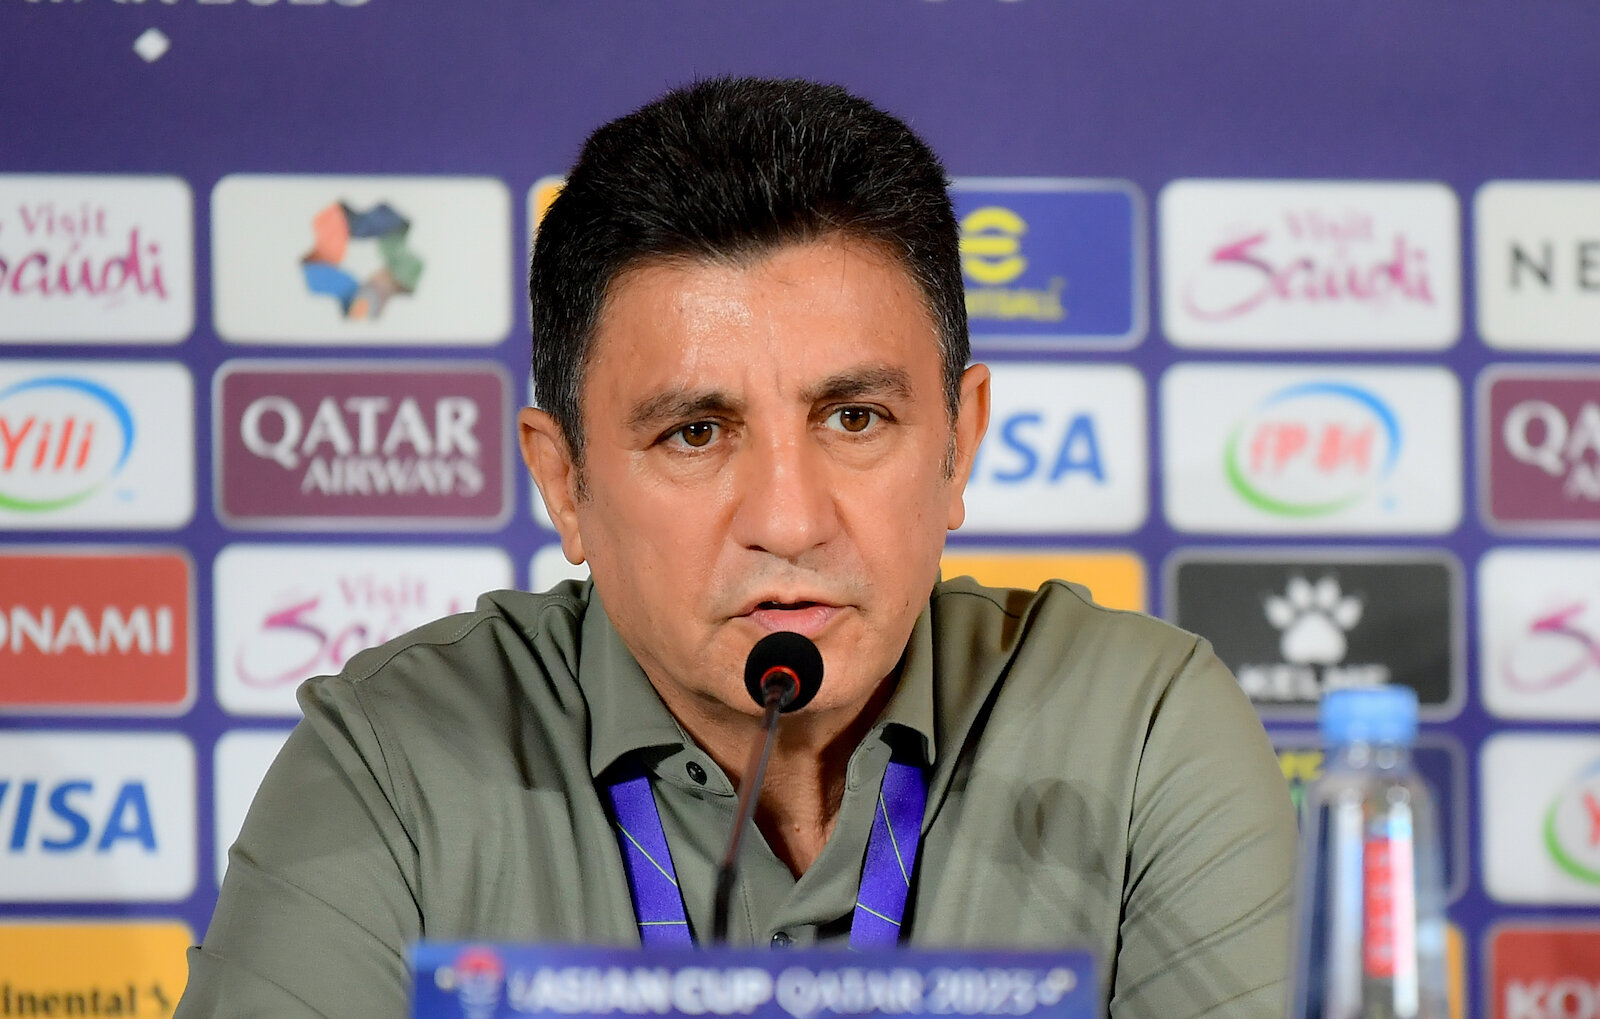 HLV Amir Ghalenoei than phiền vì lịch thi đấu của đội tuyển Iran.